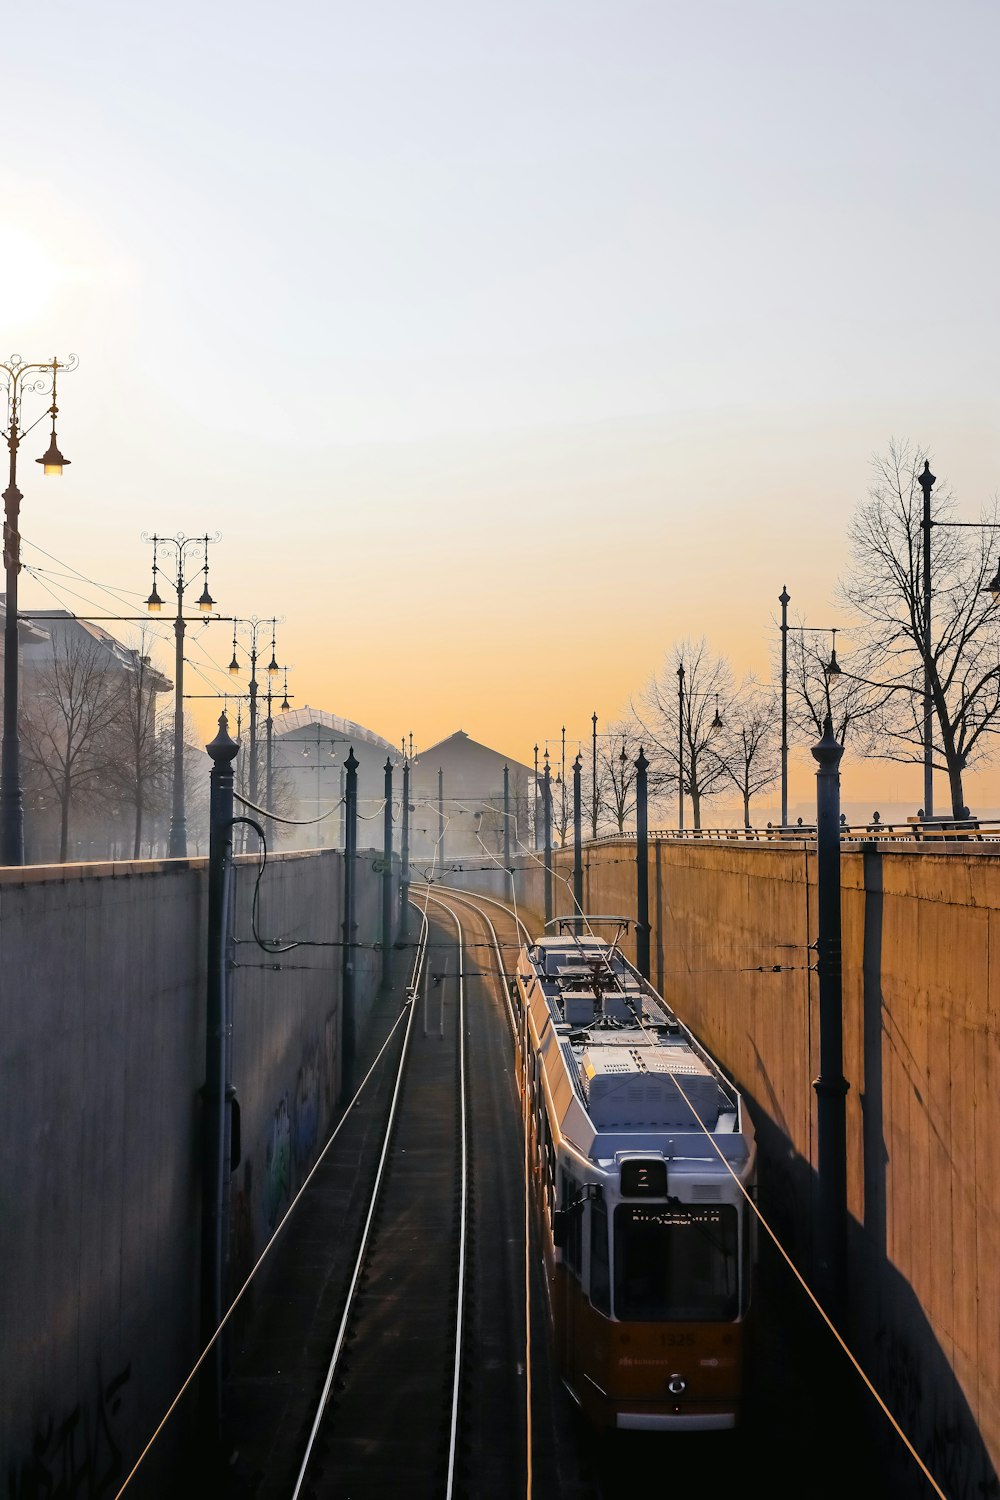 Un treno che viaggia lungo i binari del treno vicino a un muro